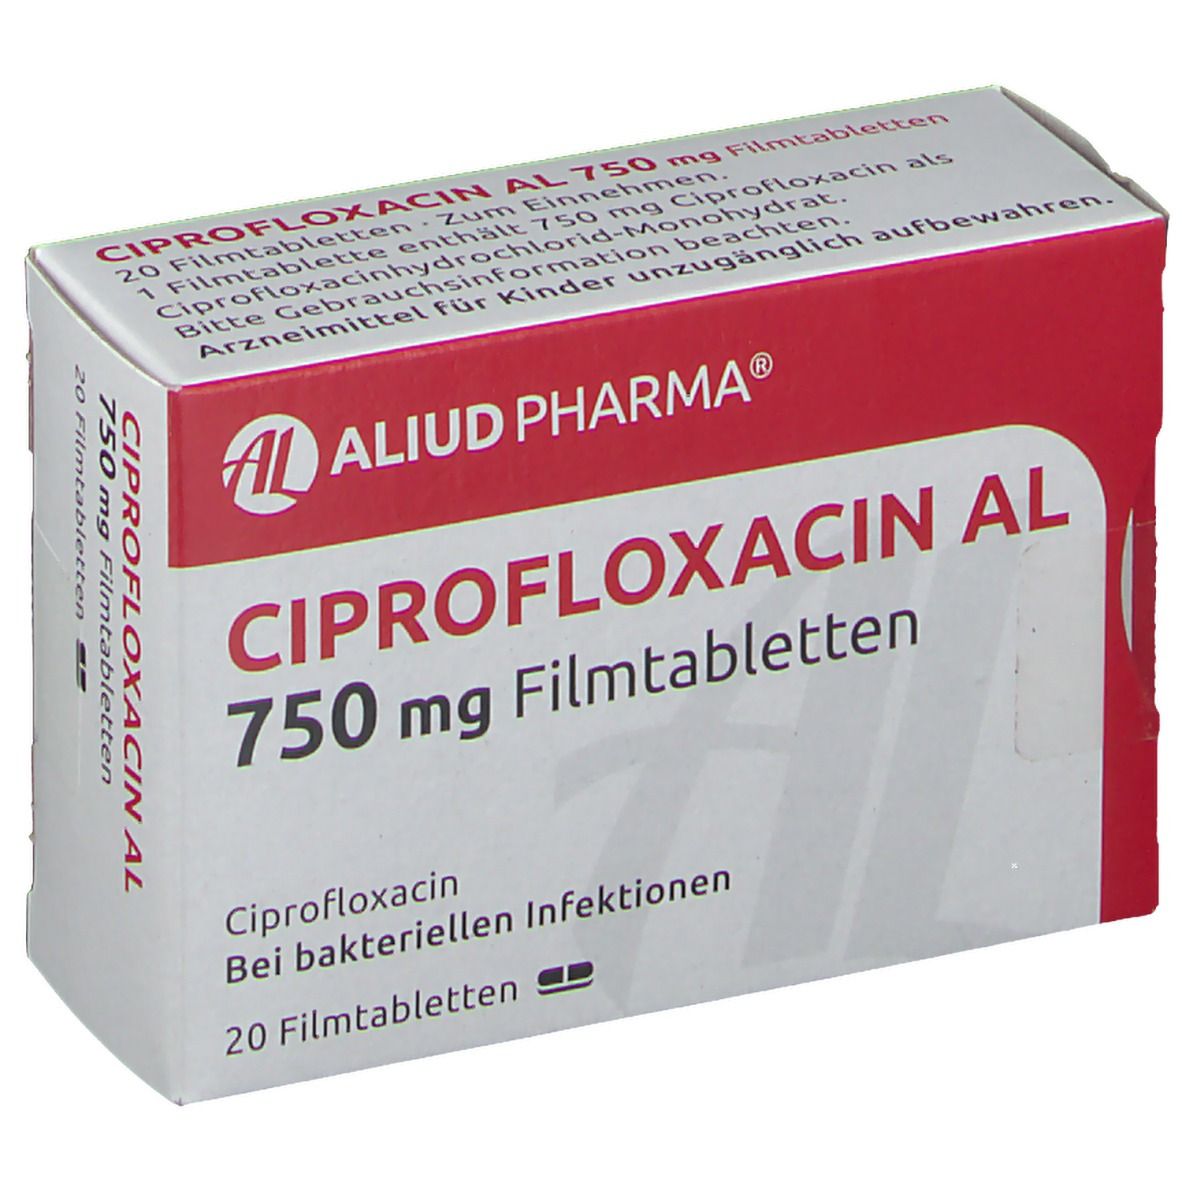 Ciprofloxacin AL 750 mg